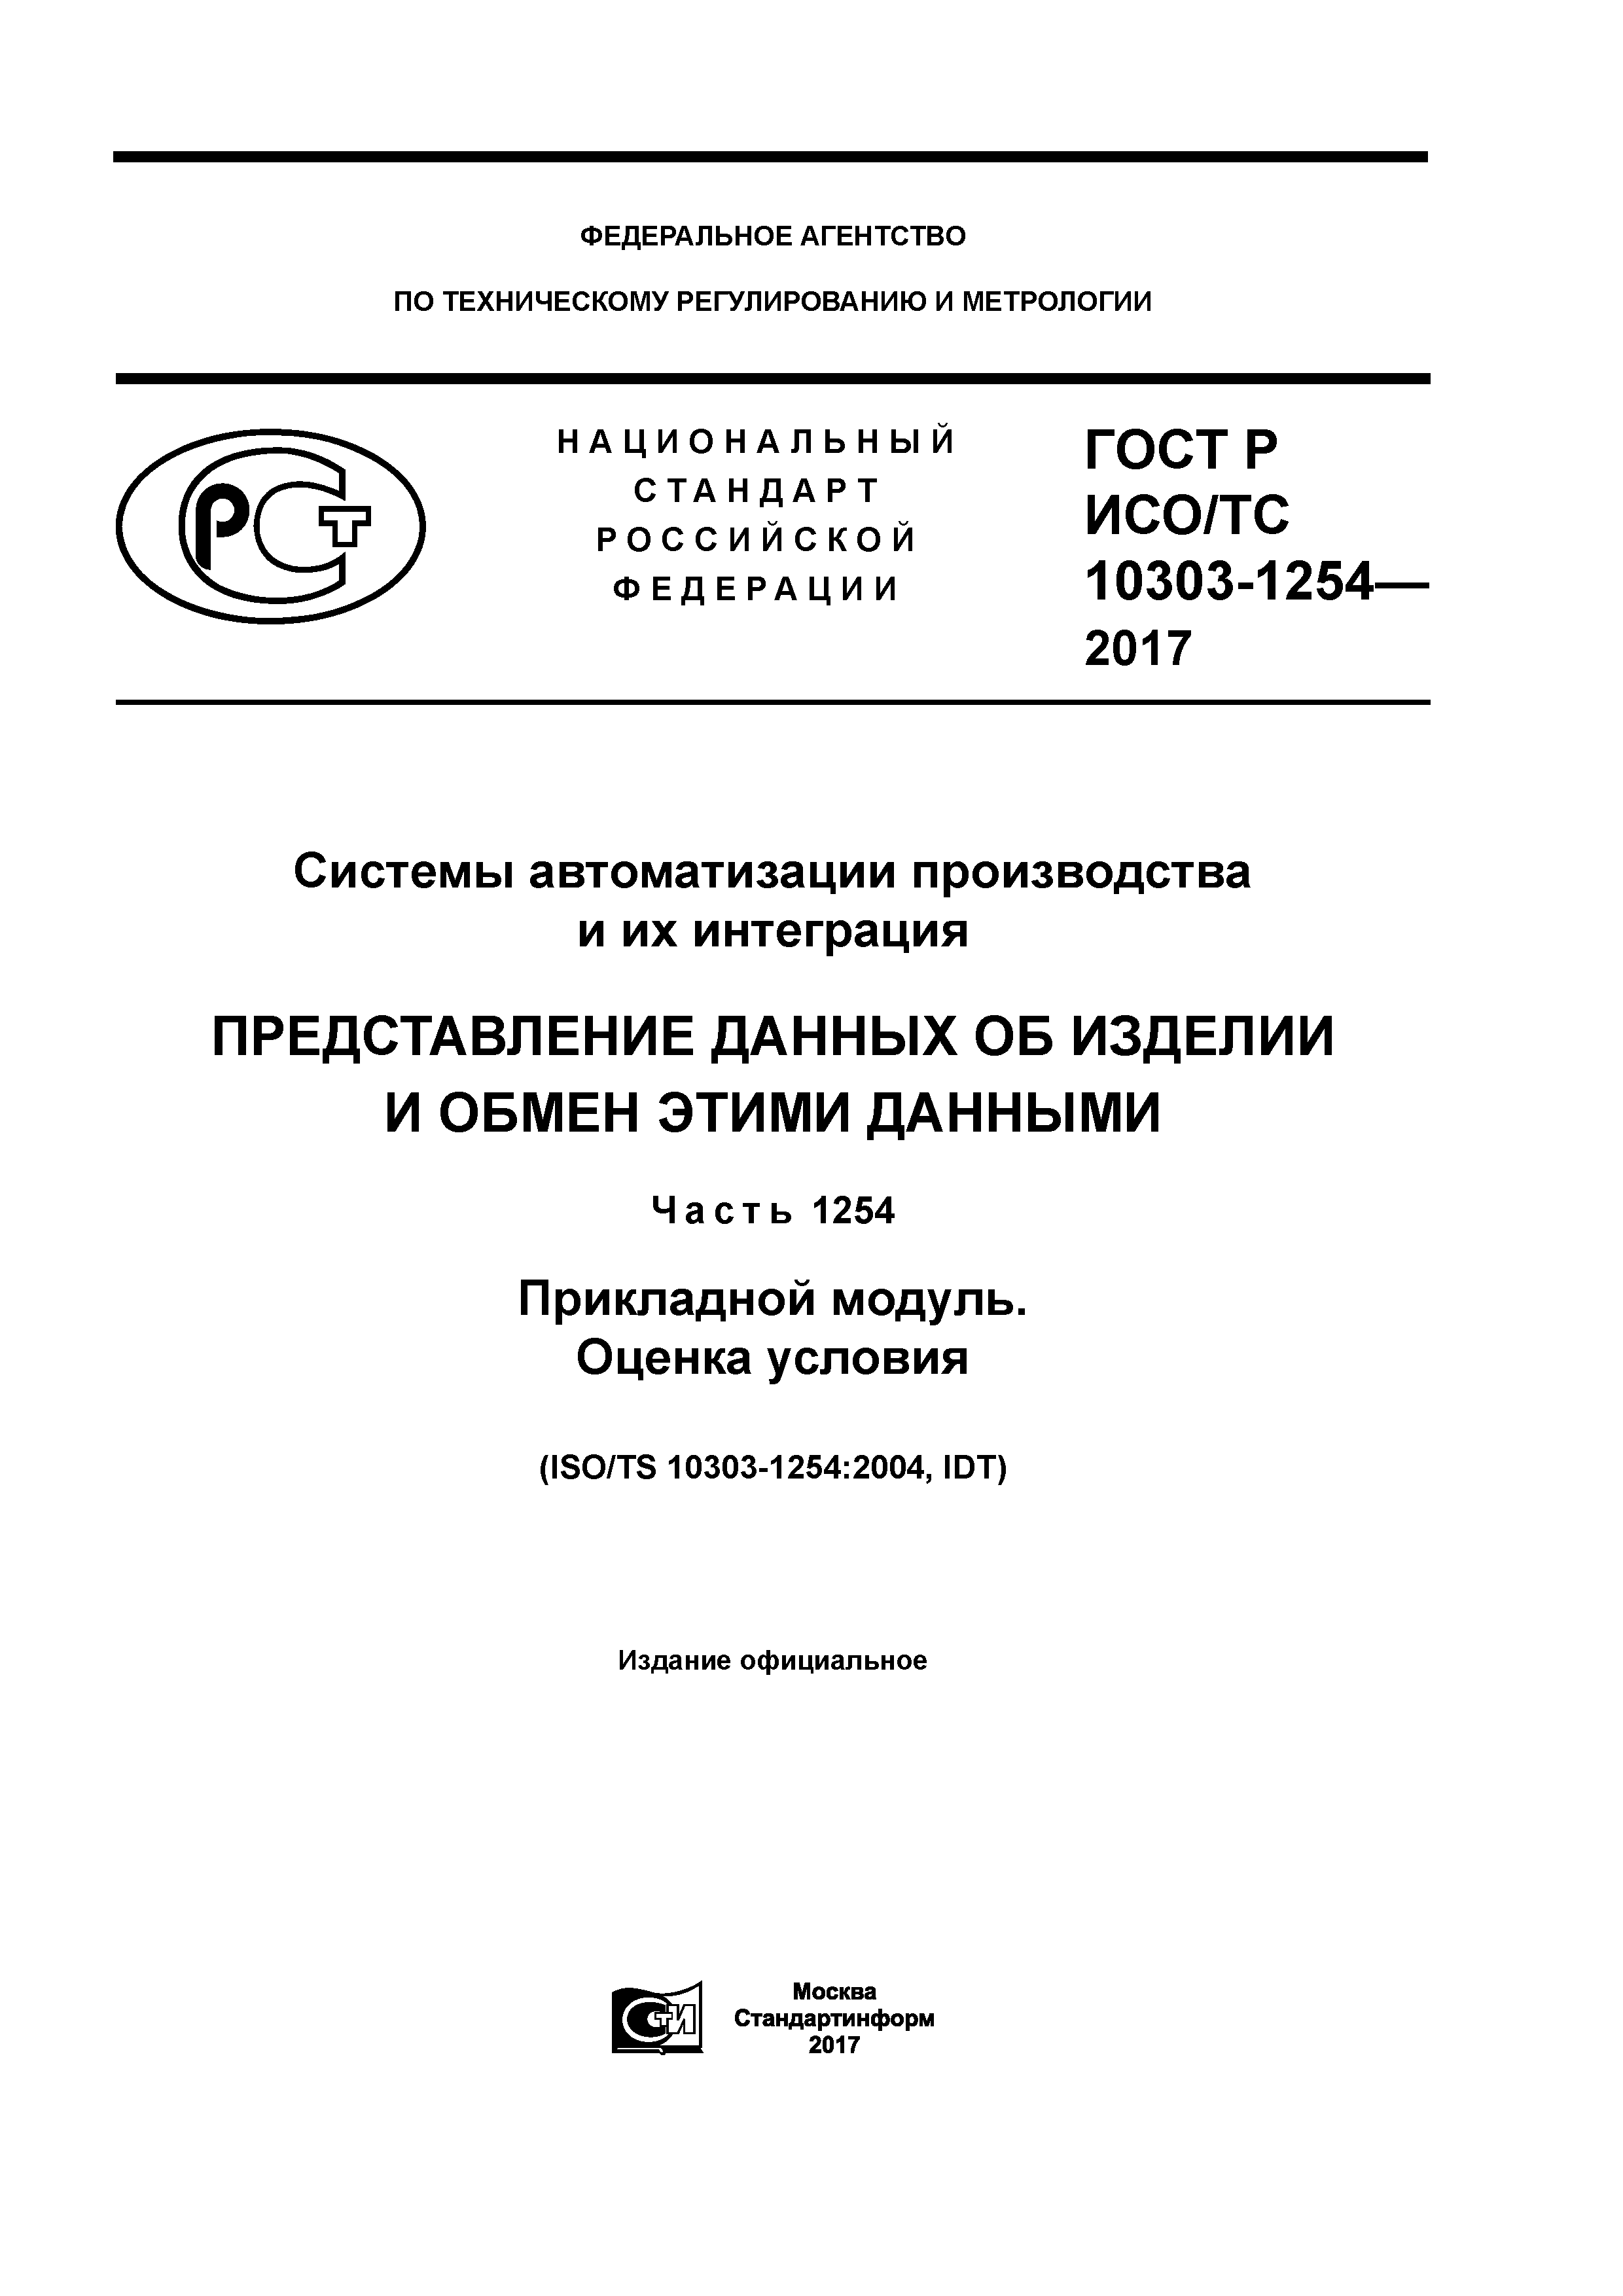 ГОСТ Р ИСО/ТС 10303-1254-2017